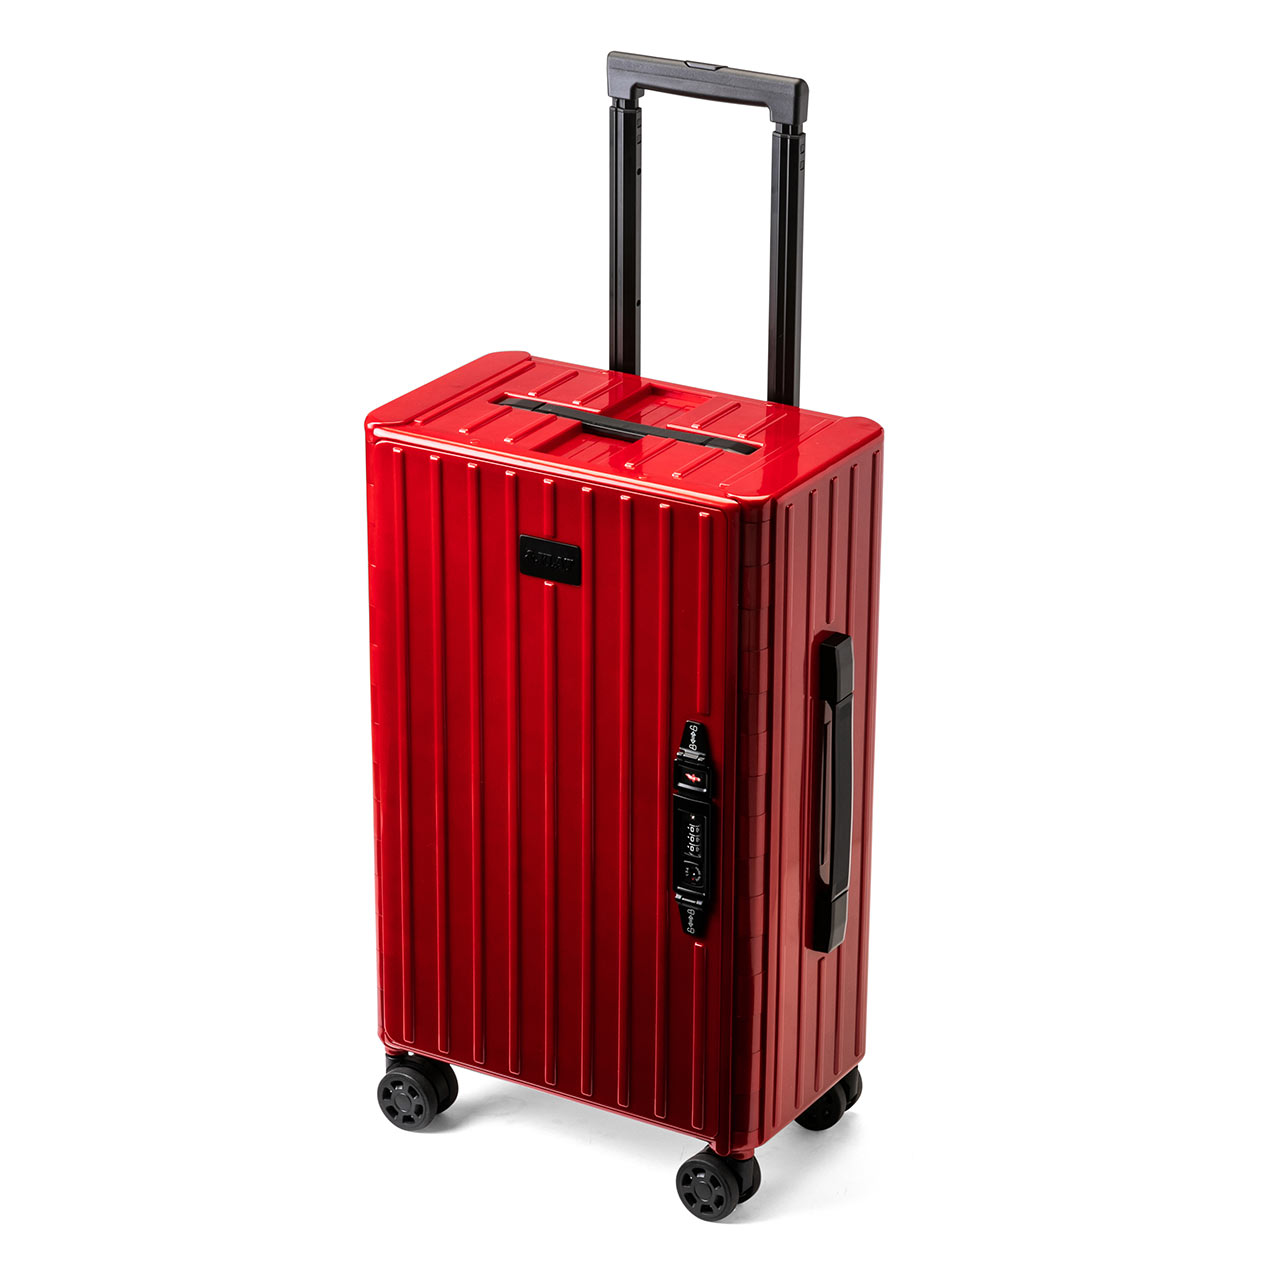 折りたたみ式 スーツケース キャリーケース 容量35L 静音キャスターつき ポリカーボネート製 レッド 200-BAGCR005R